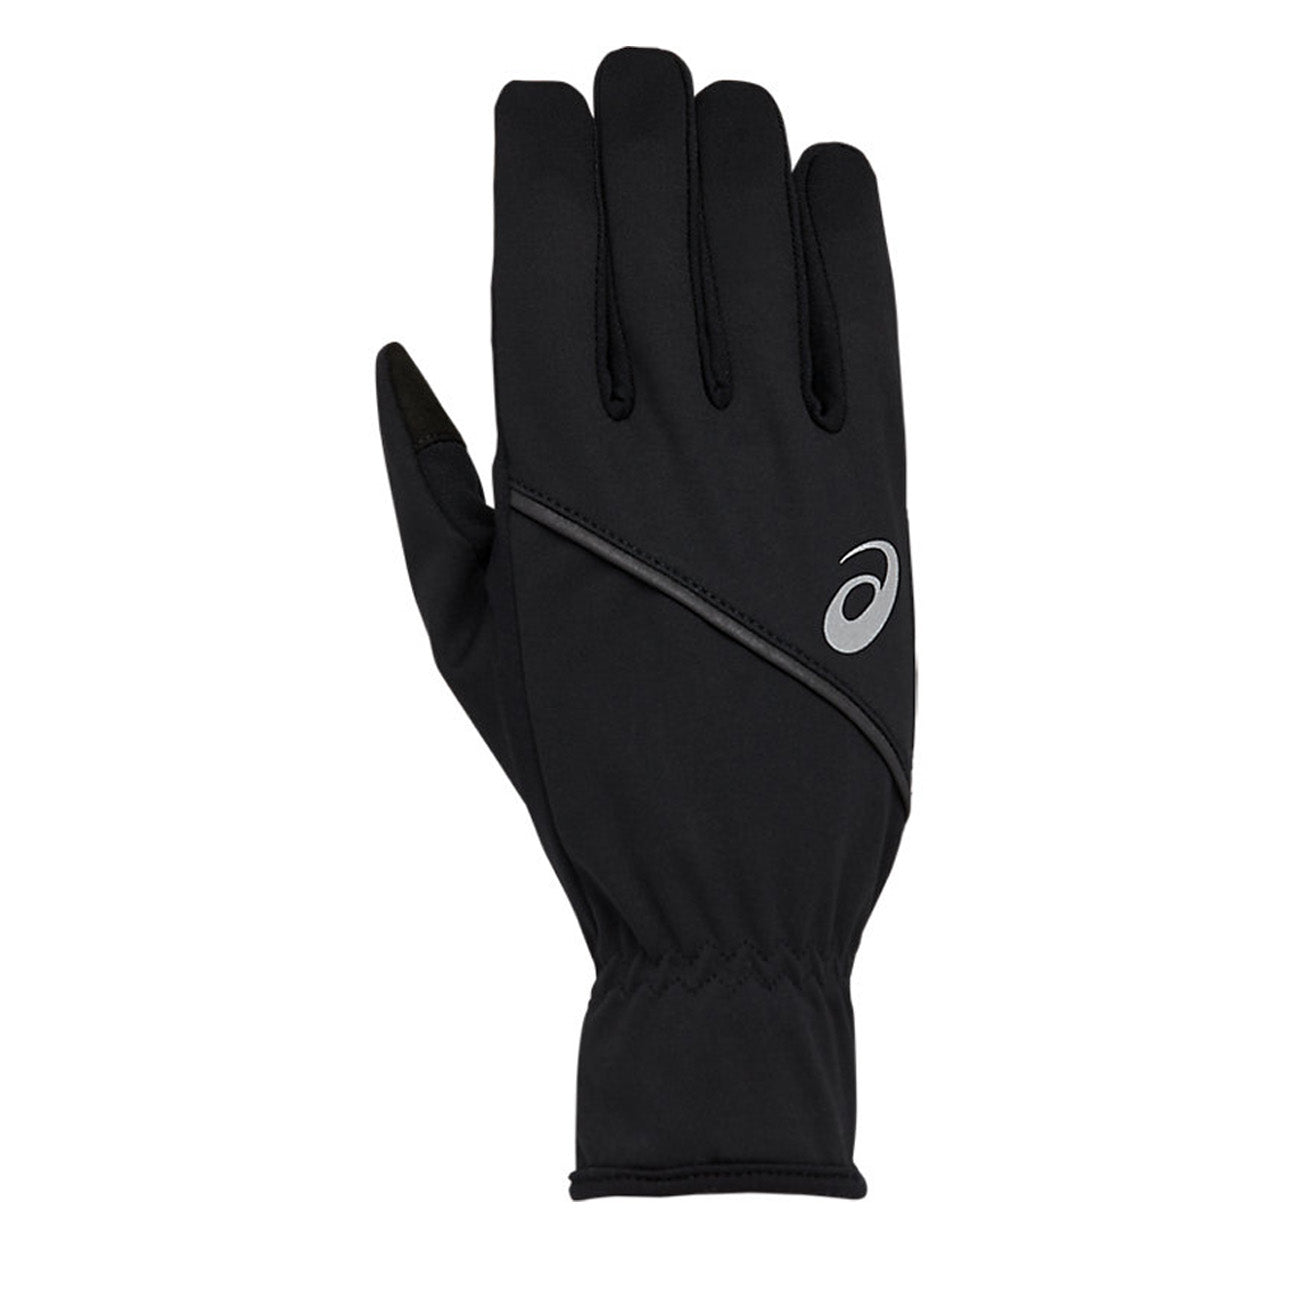 Gloves – Runster Thermal Asics Performance Black